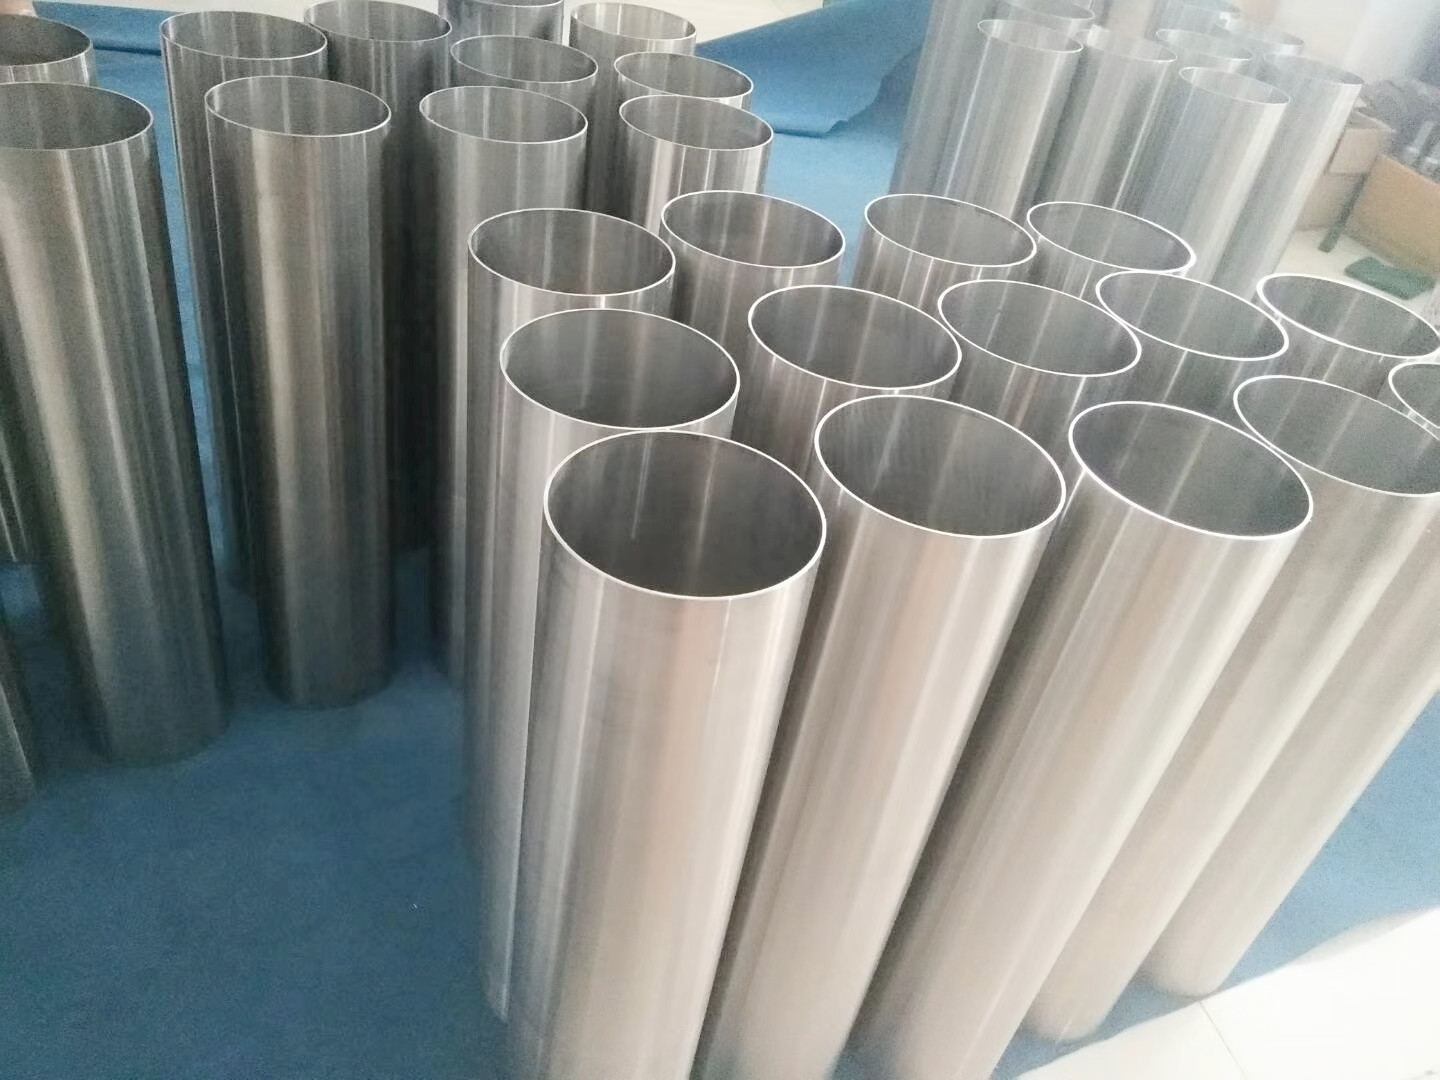 Characteristics of titanium alloy pipe